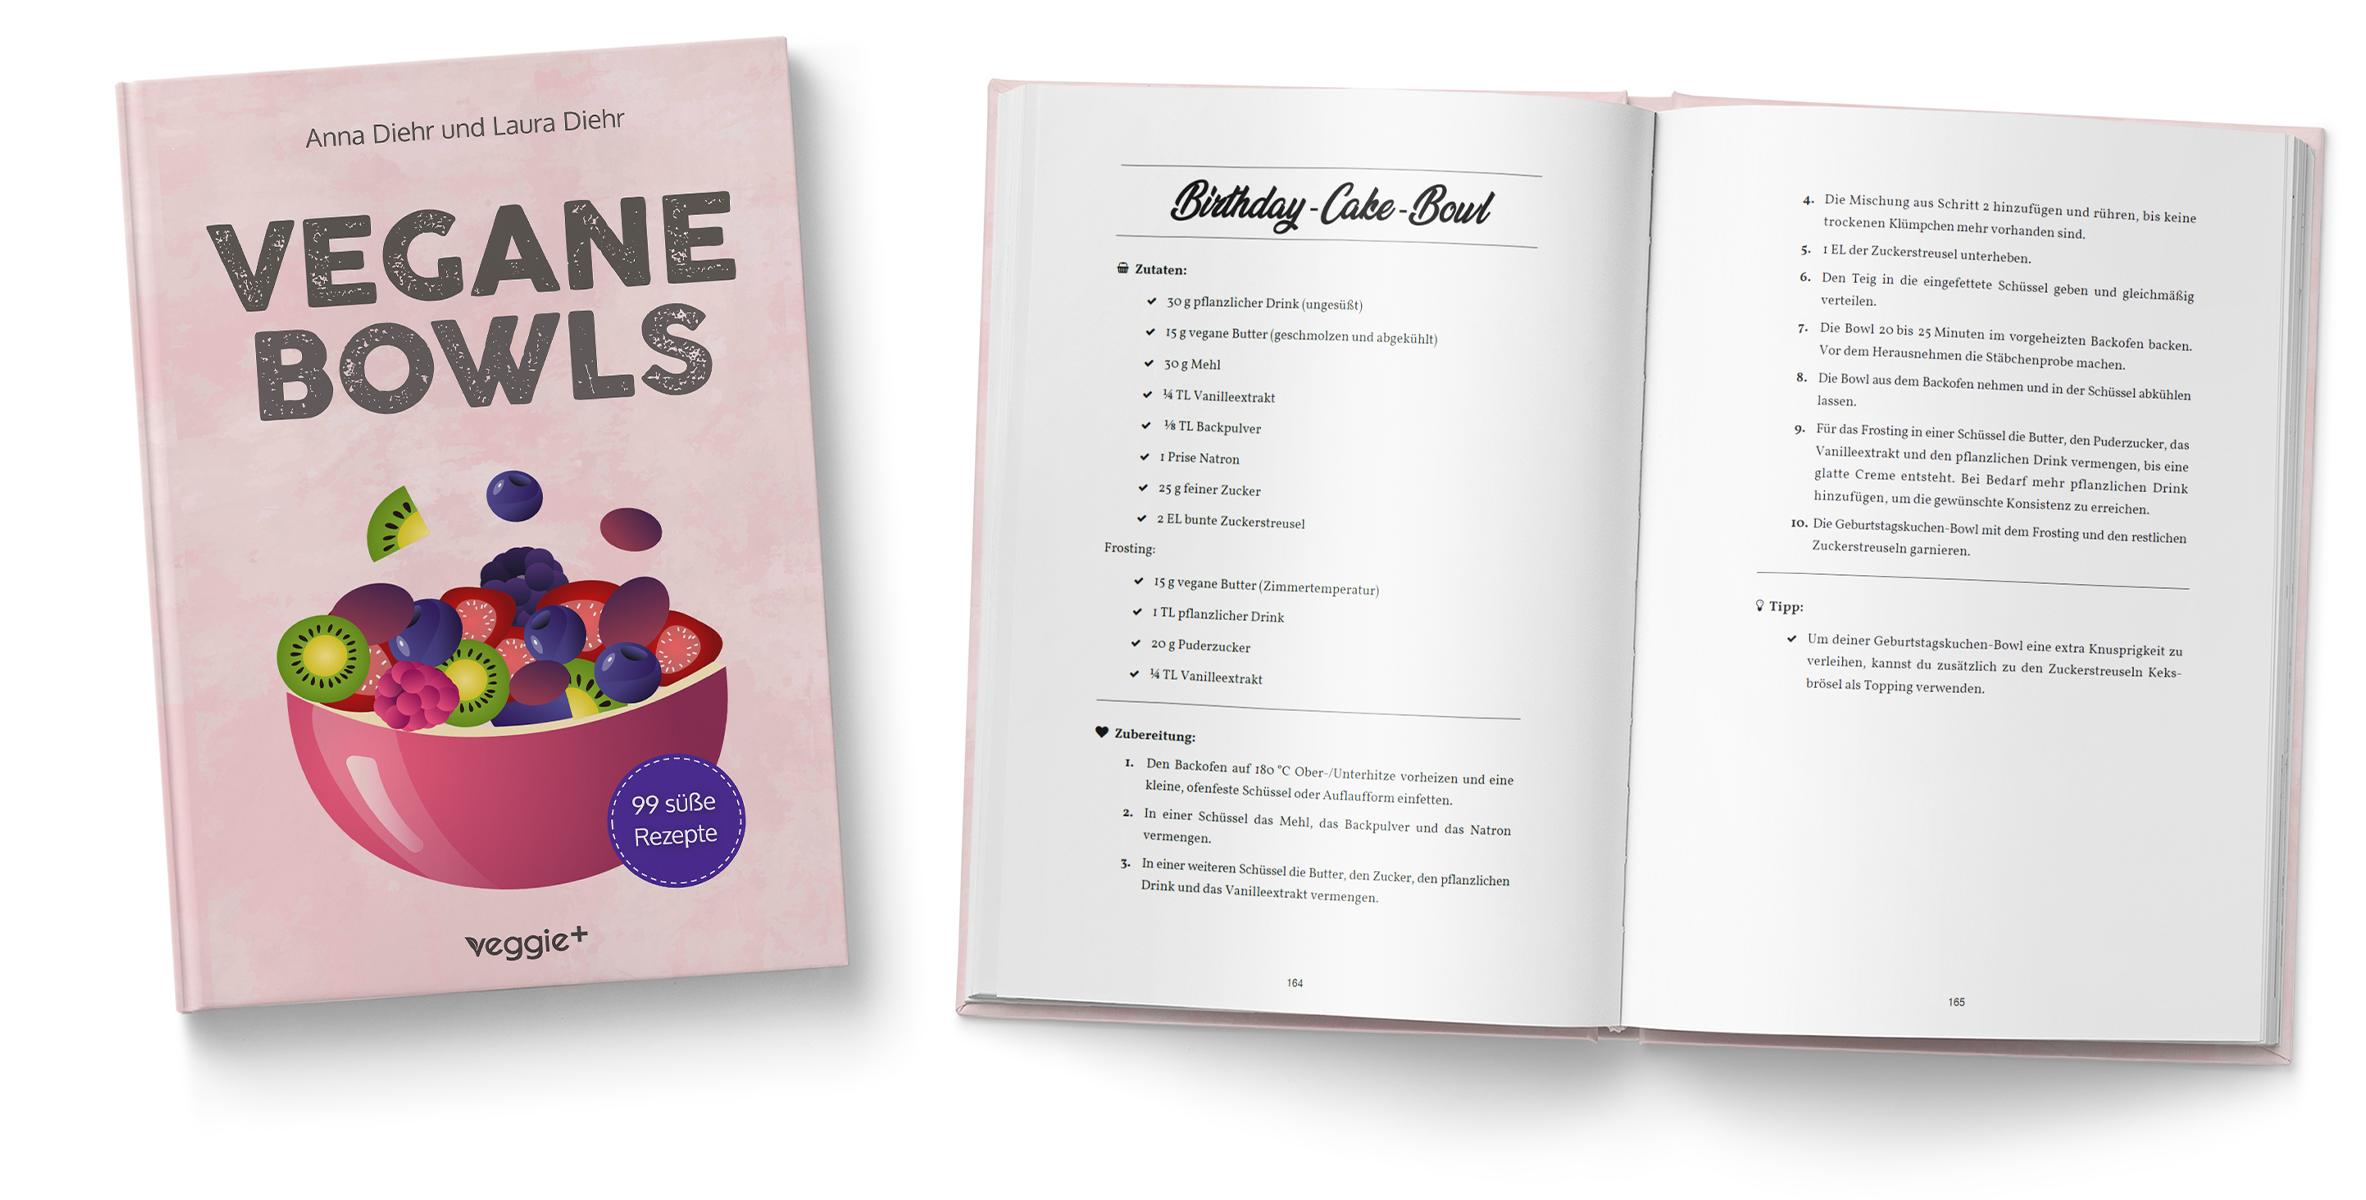 Vegane Bowls – 99 süße Rezepte: Das große vegane Kochbuch mit den besten Bowl-Rezepten für süße Gerichte und eine gesunde Ernährung von Anna Diehr und Laura Diehr